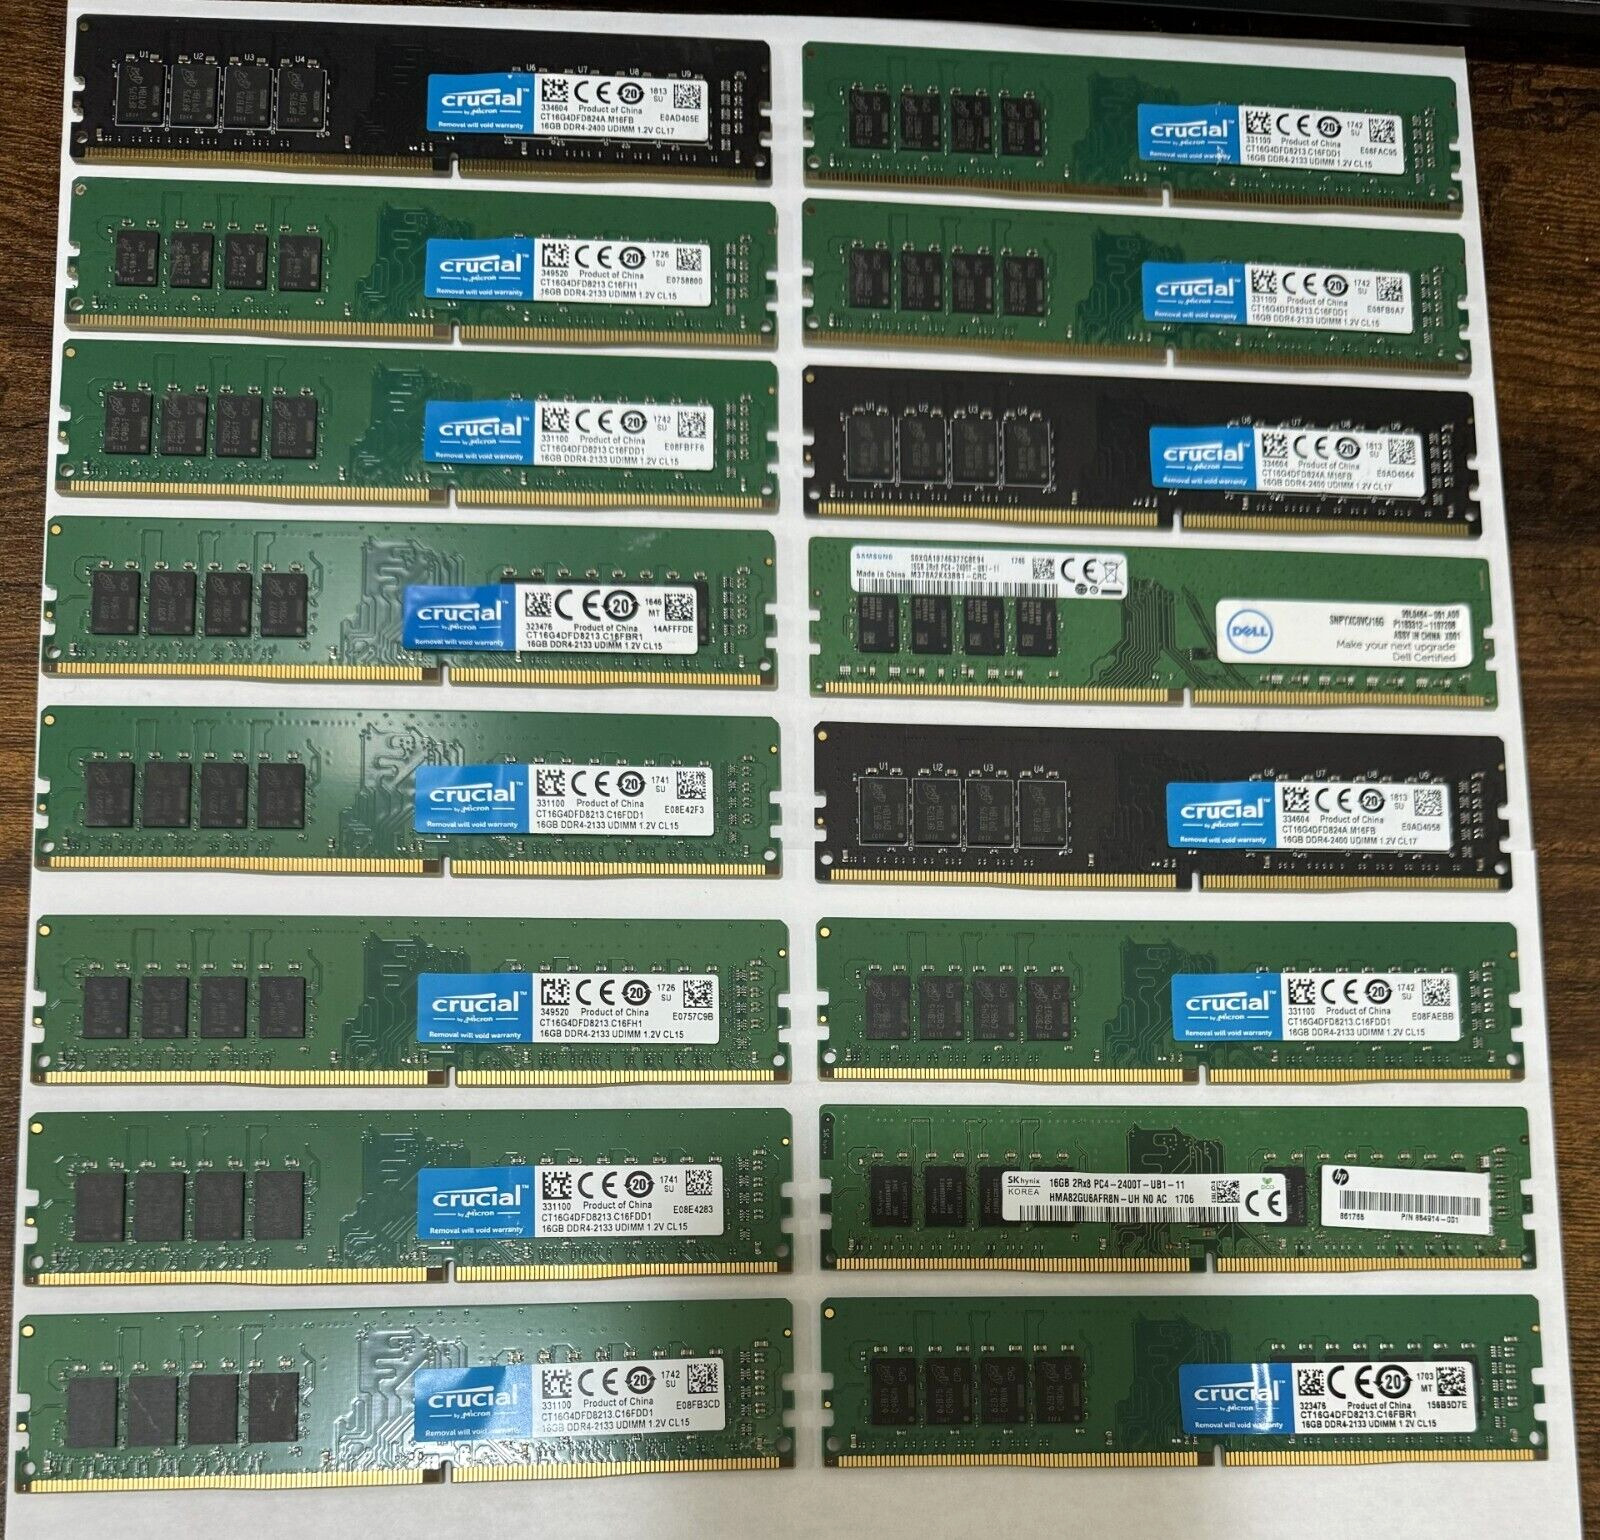 LOT OF ( 25 ) 16GB DDR4 Desktop Ram sticks - Mixed brands and speeds